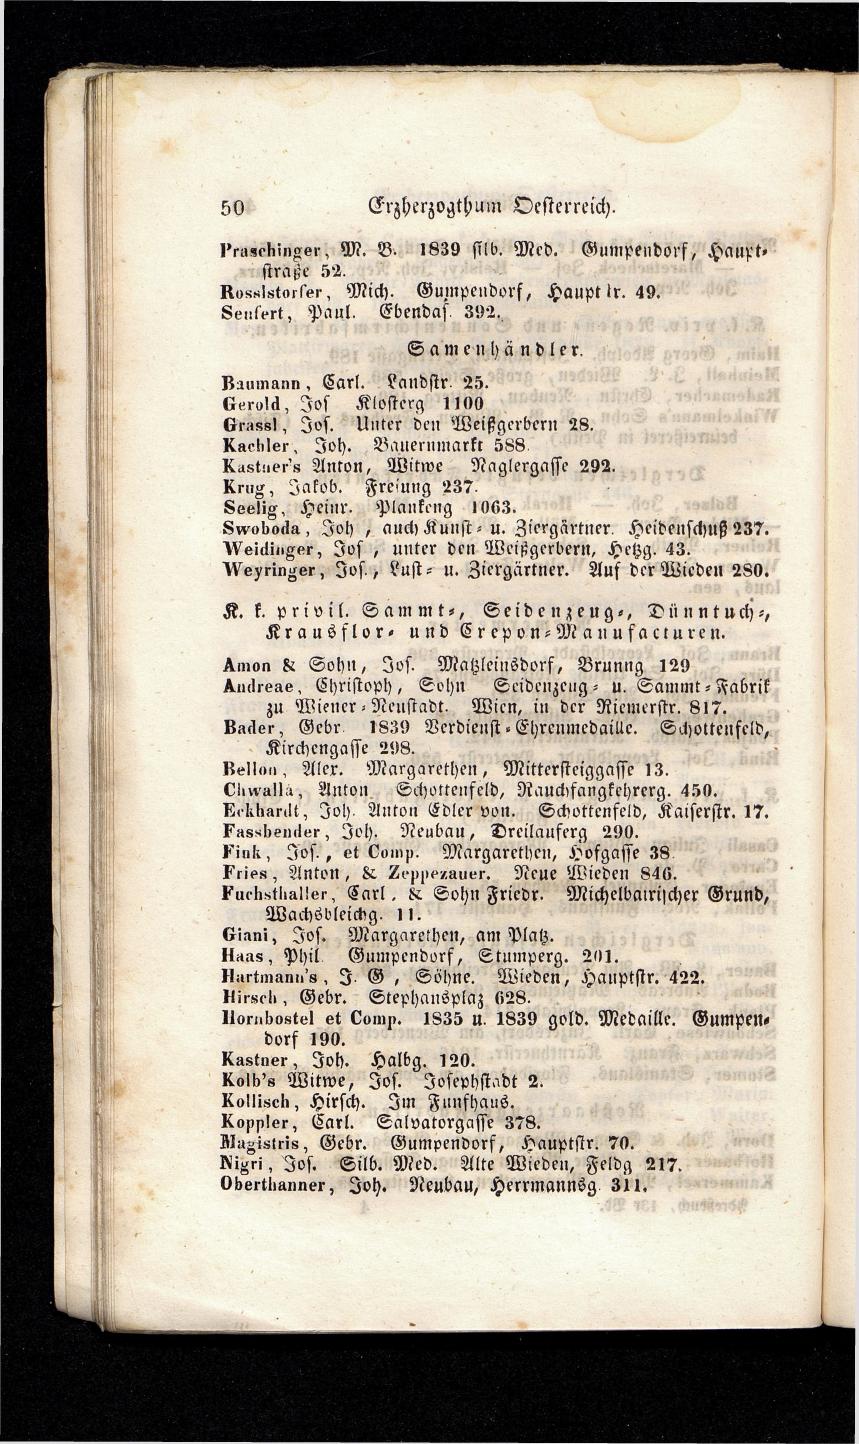 Grosses Adressbuch der Kaufleute. No. 13. Oesterreich ober u. unter der Enns 1844 - Seite 54